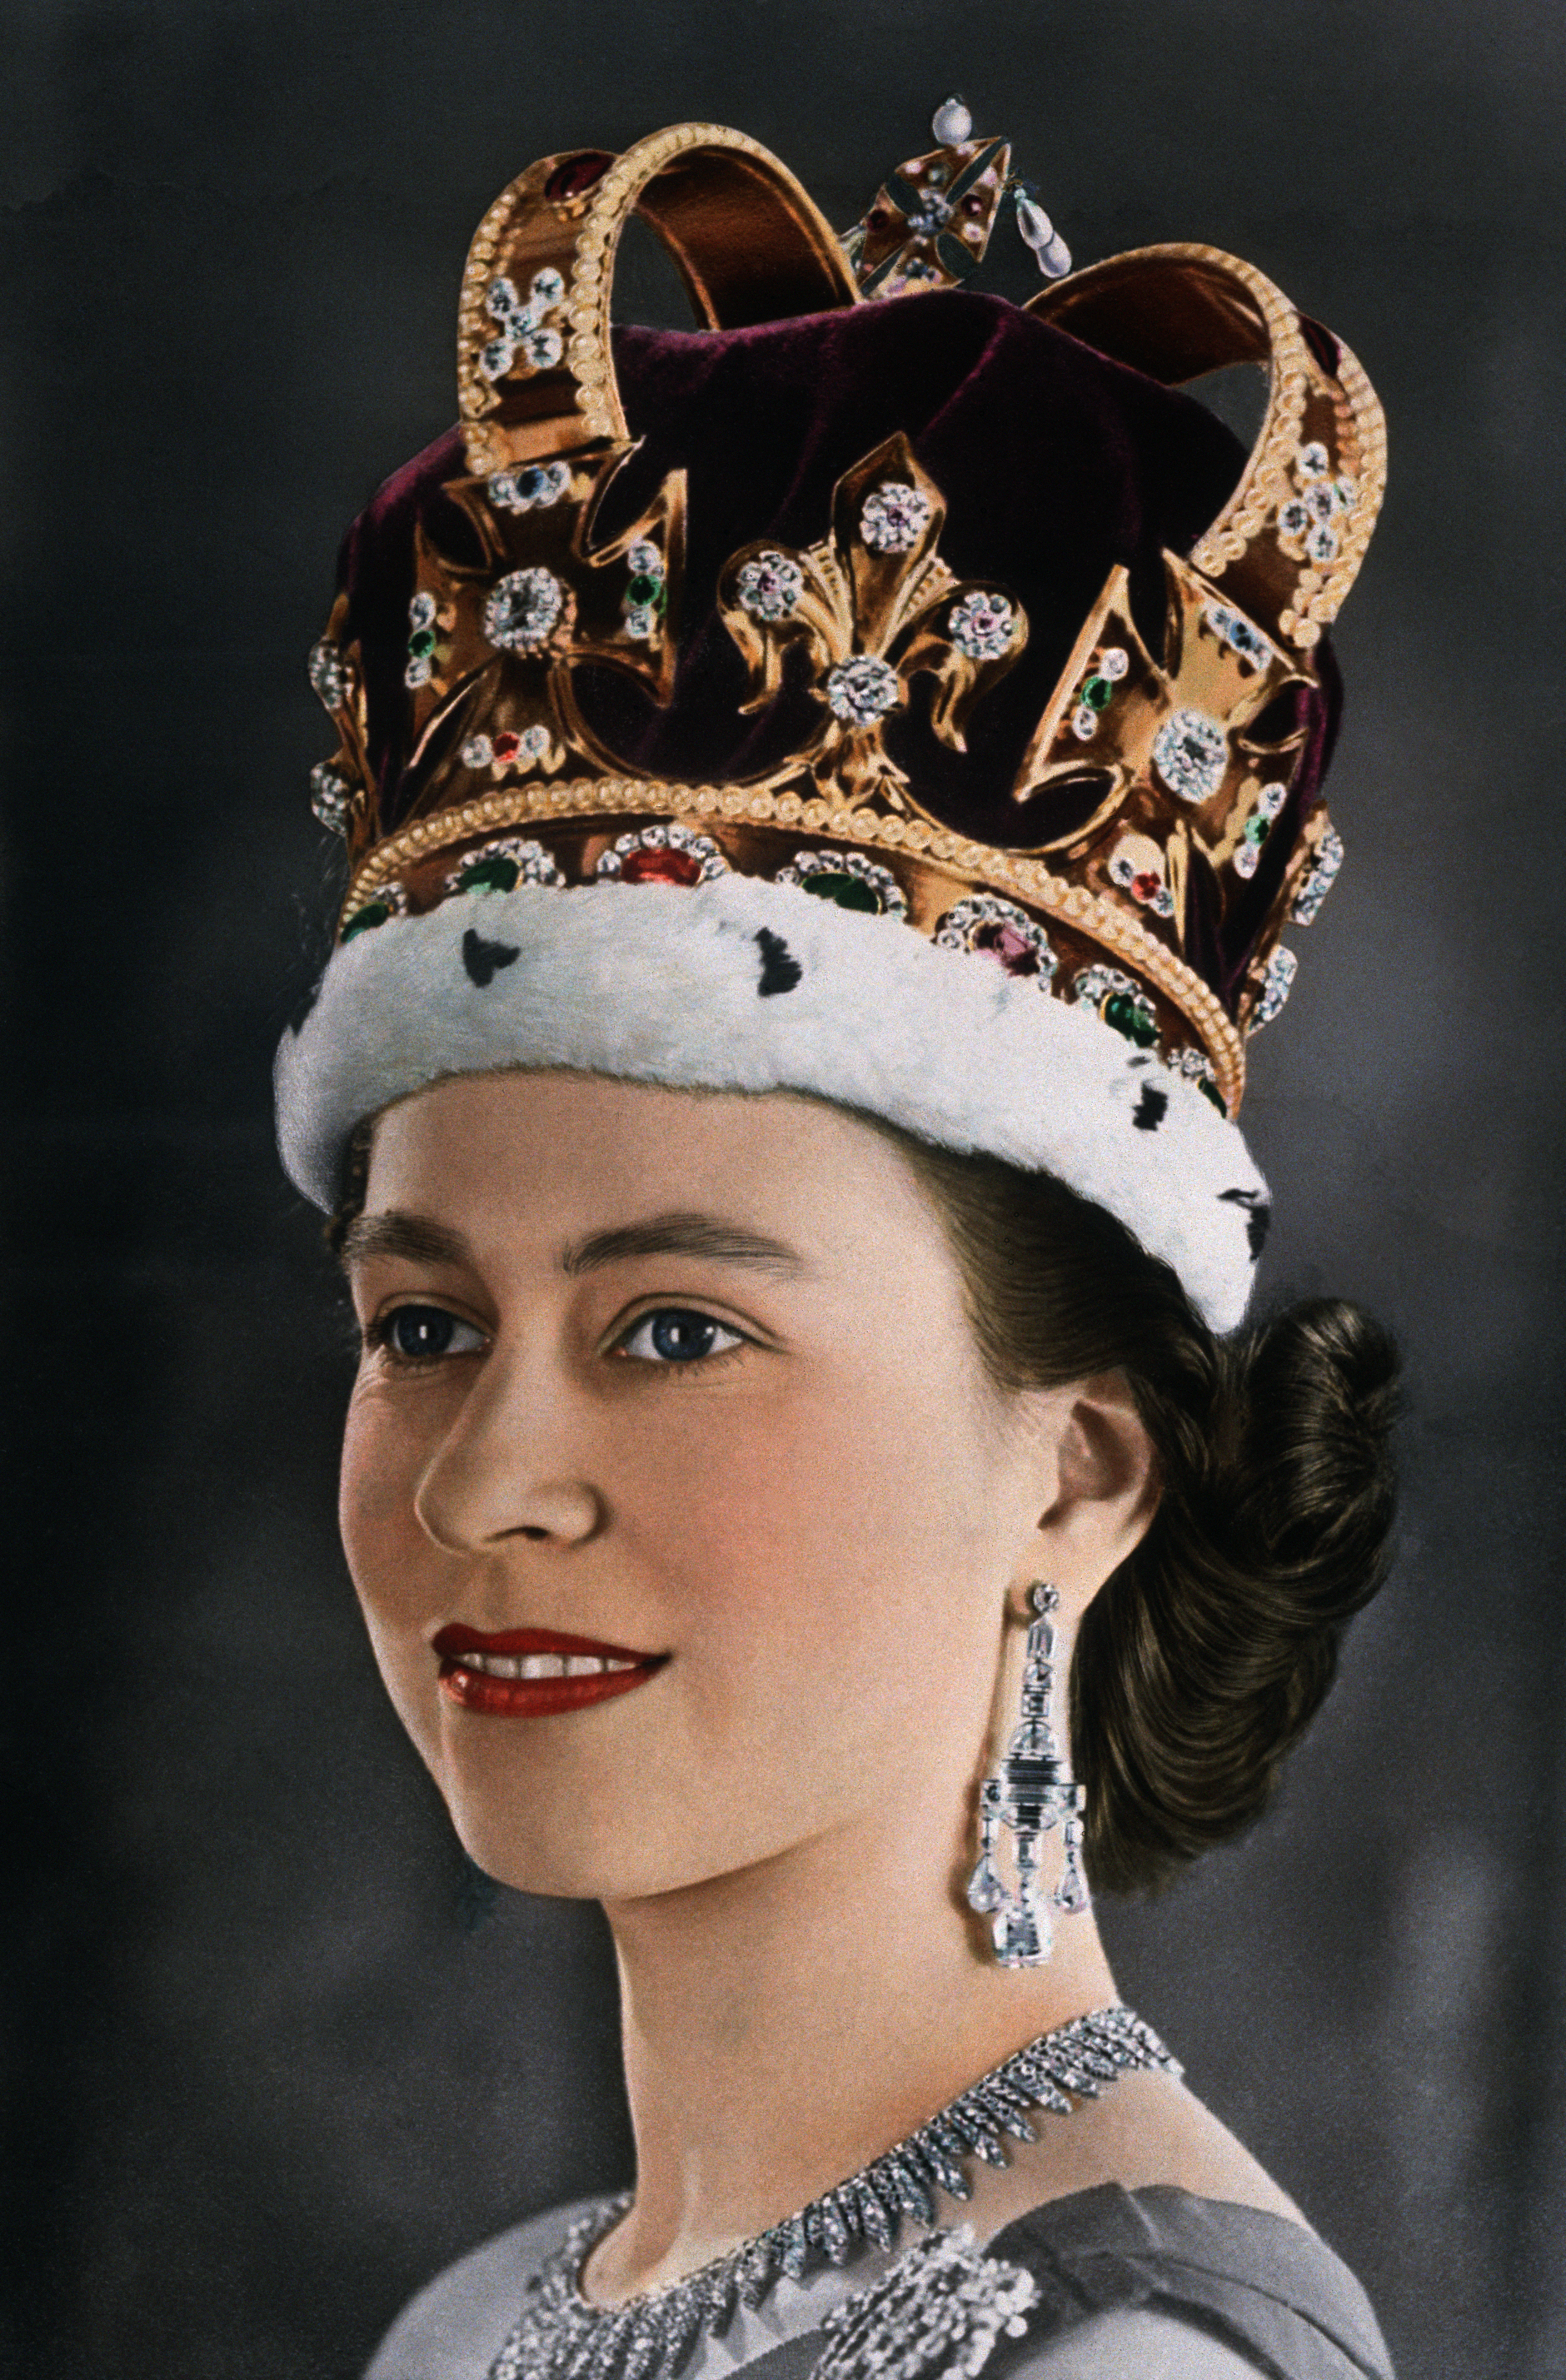 Historical photos of the coronation of Queen Elizabeth II | Fotos | Culture  | EL PAÍS English